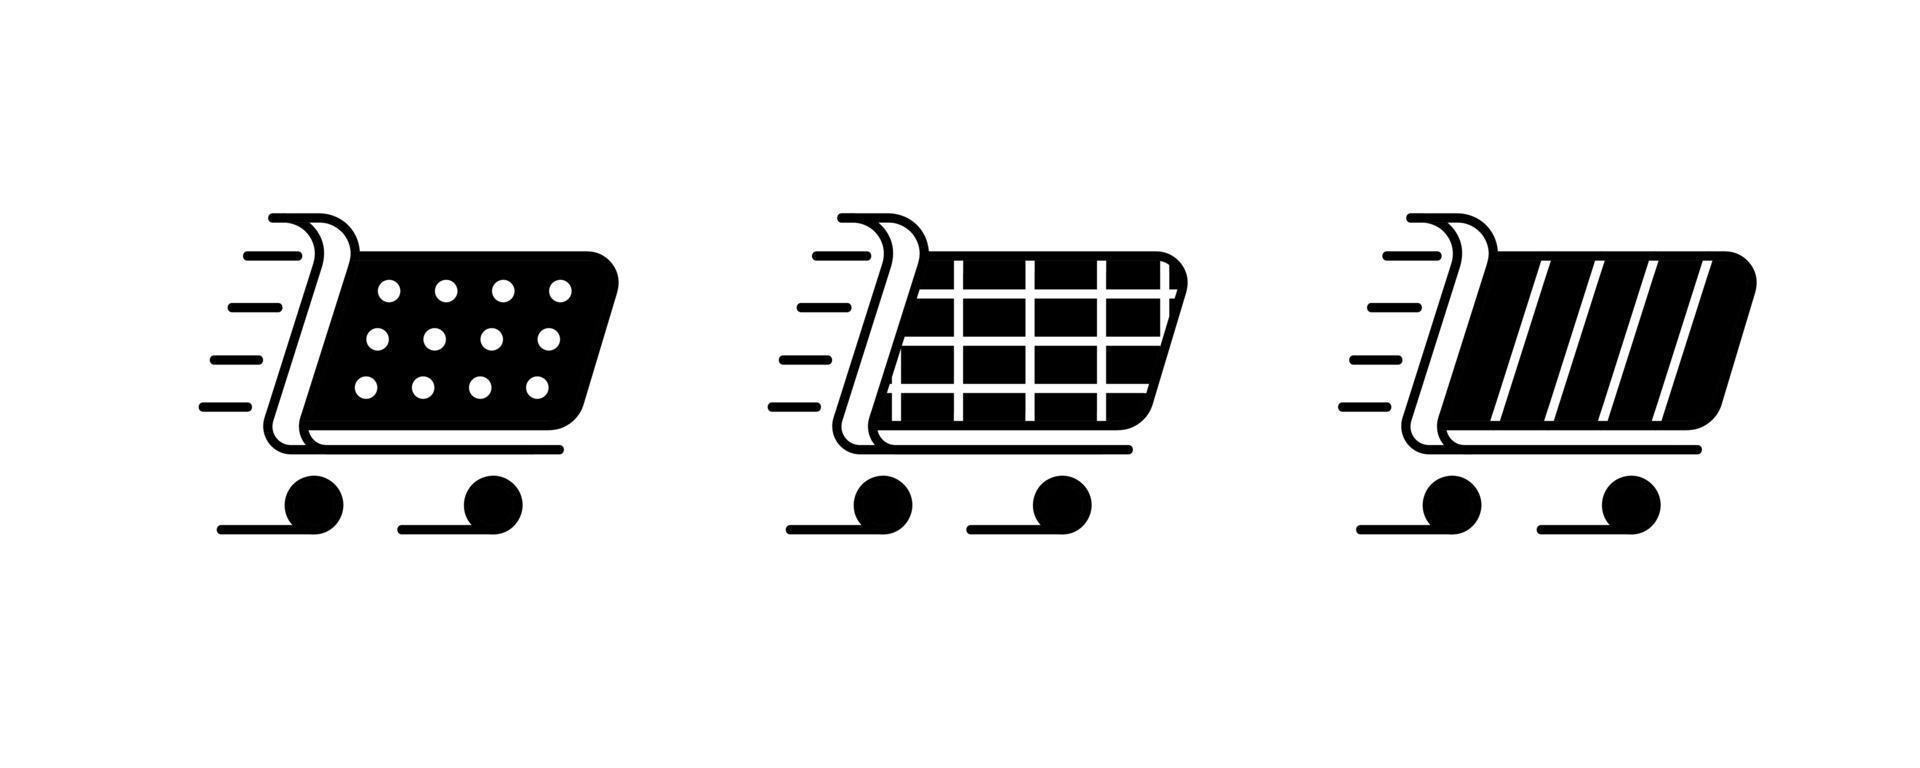 conjunto de 3 ícones de carrinho de compras diferentes. vetor